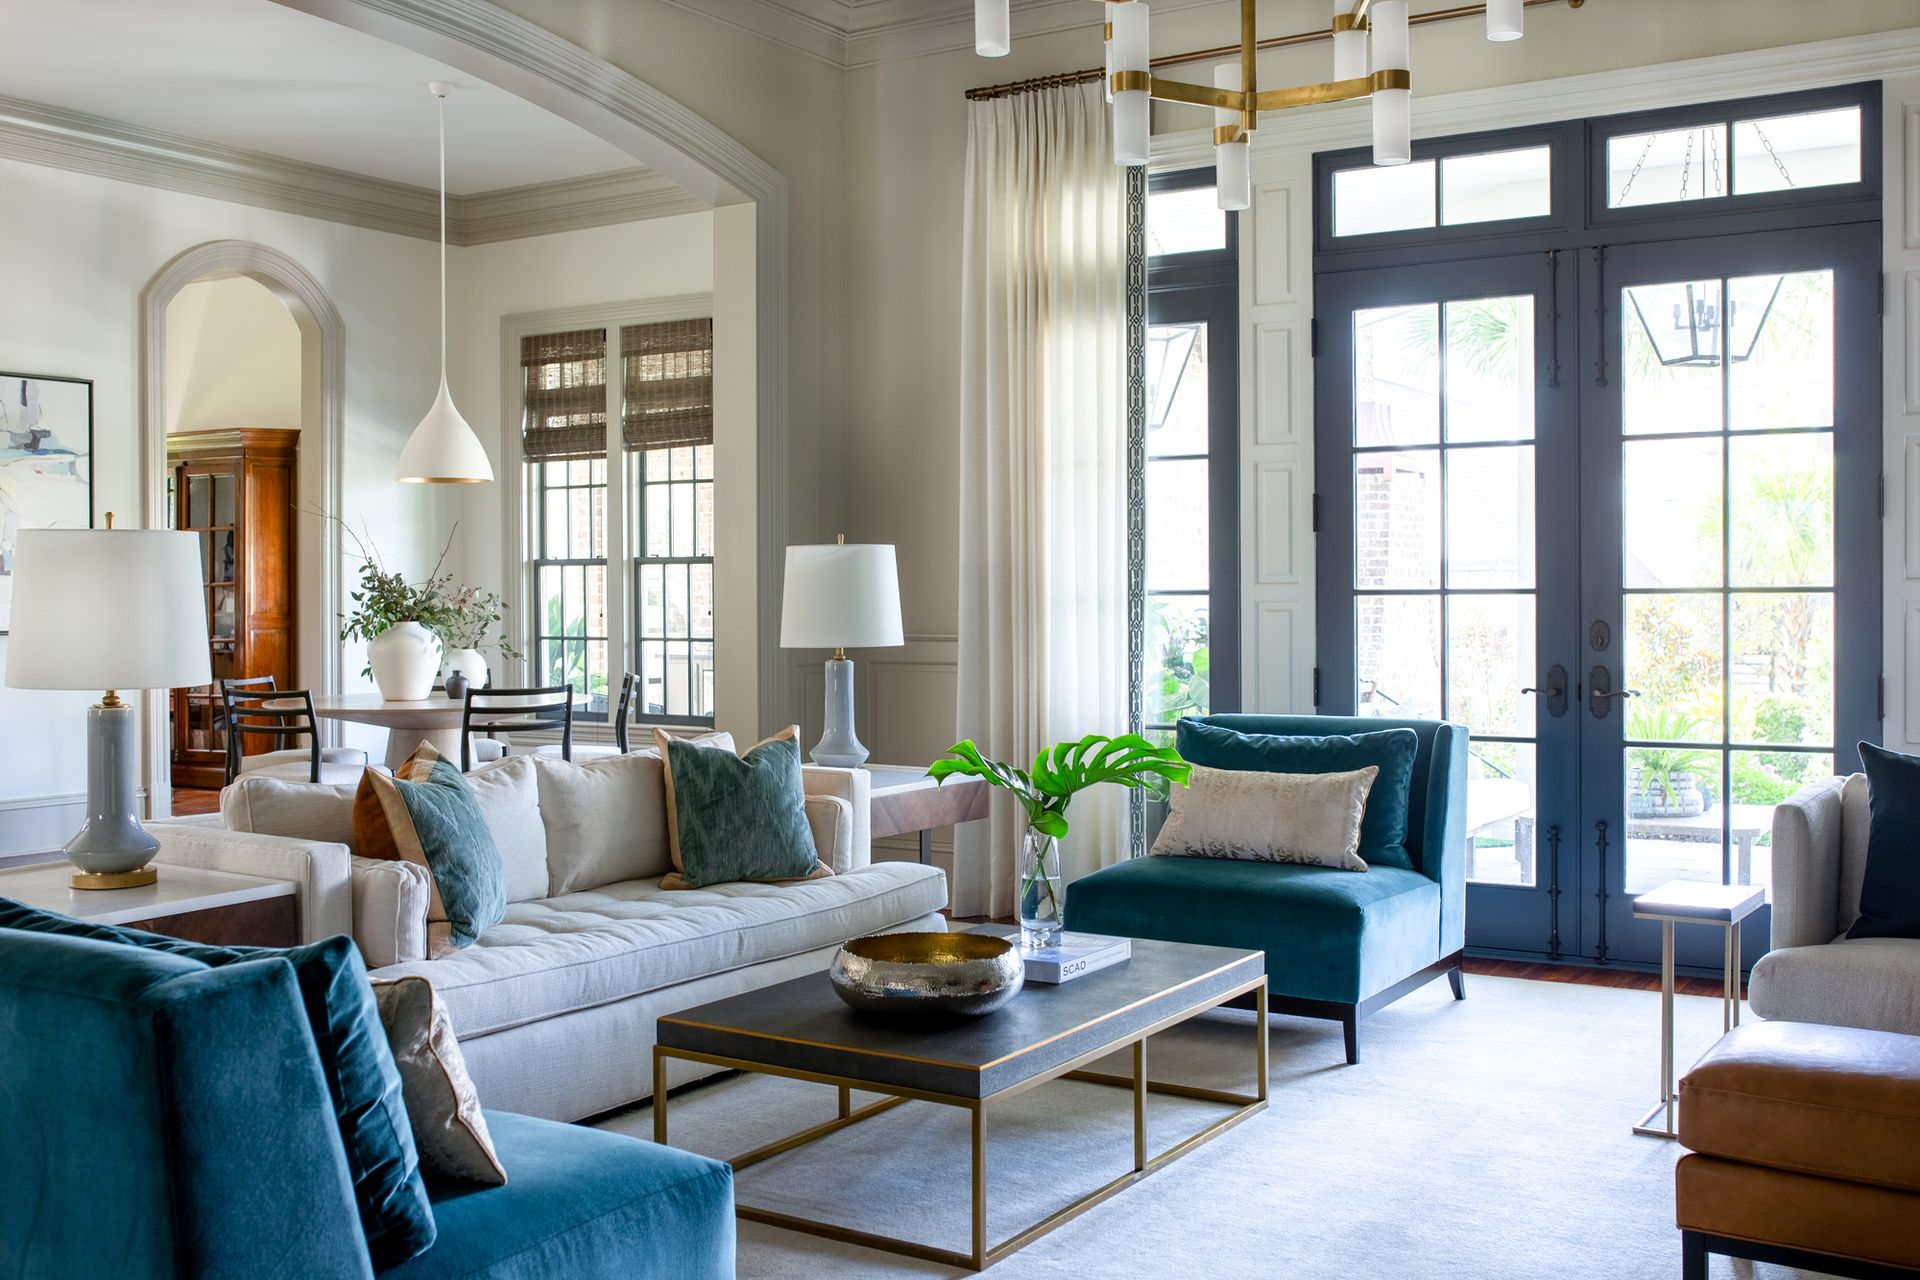 How do I make a living room feel cozy? 10 easy expert tips | Livingetc